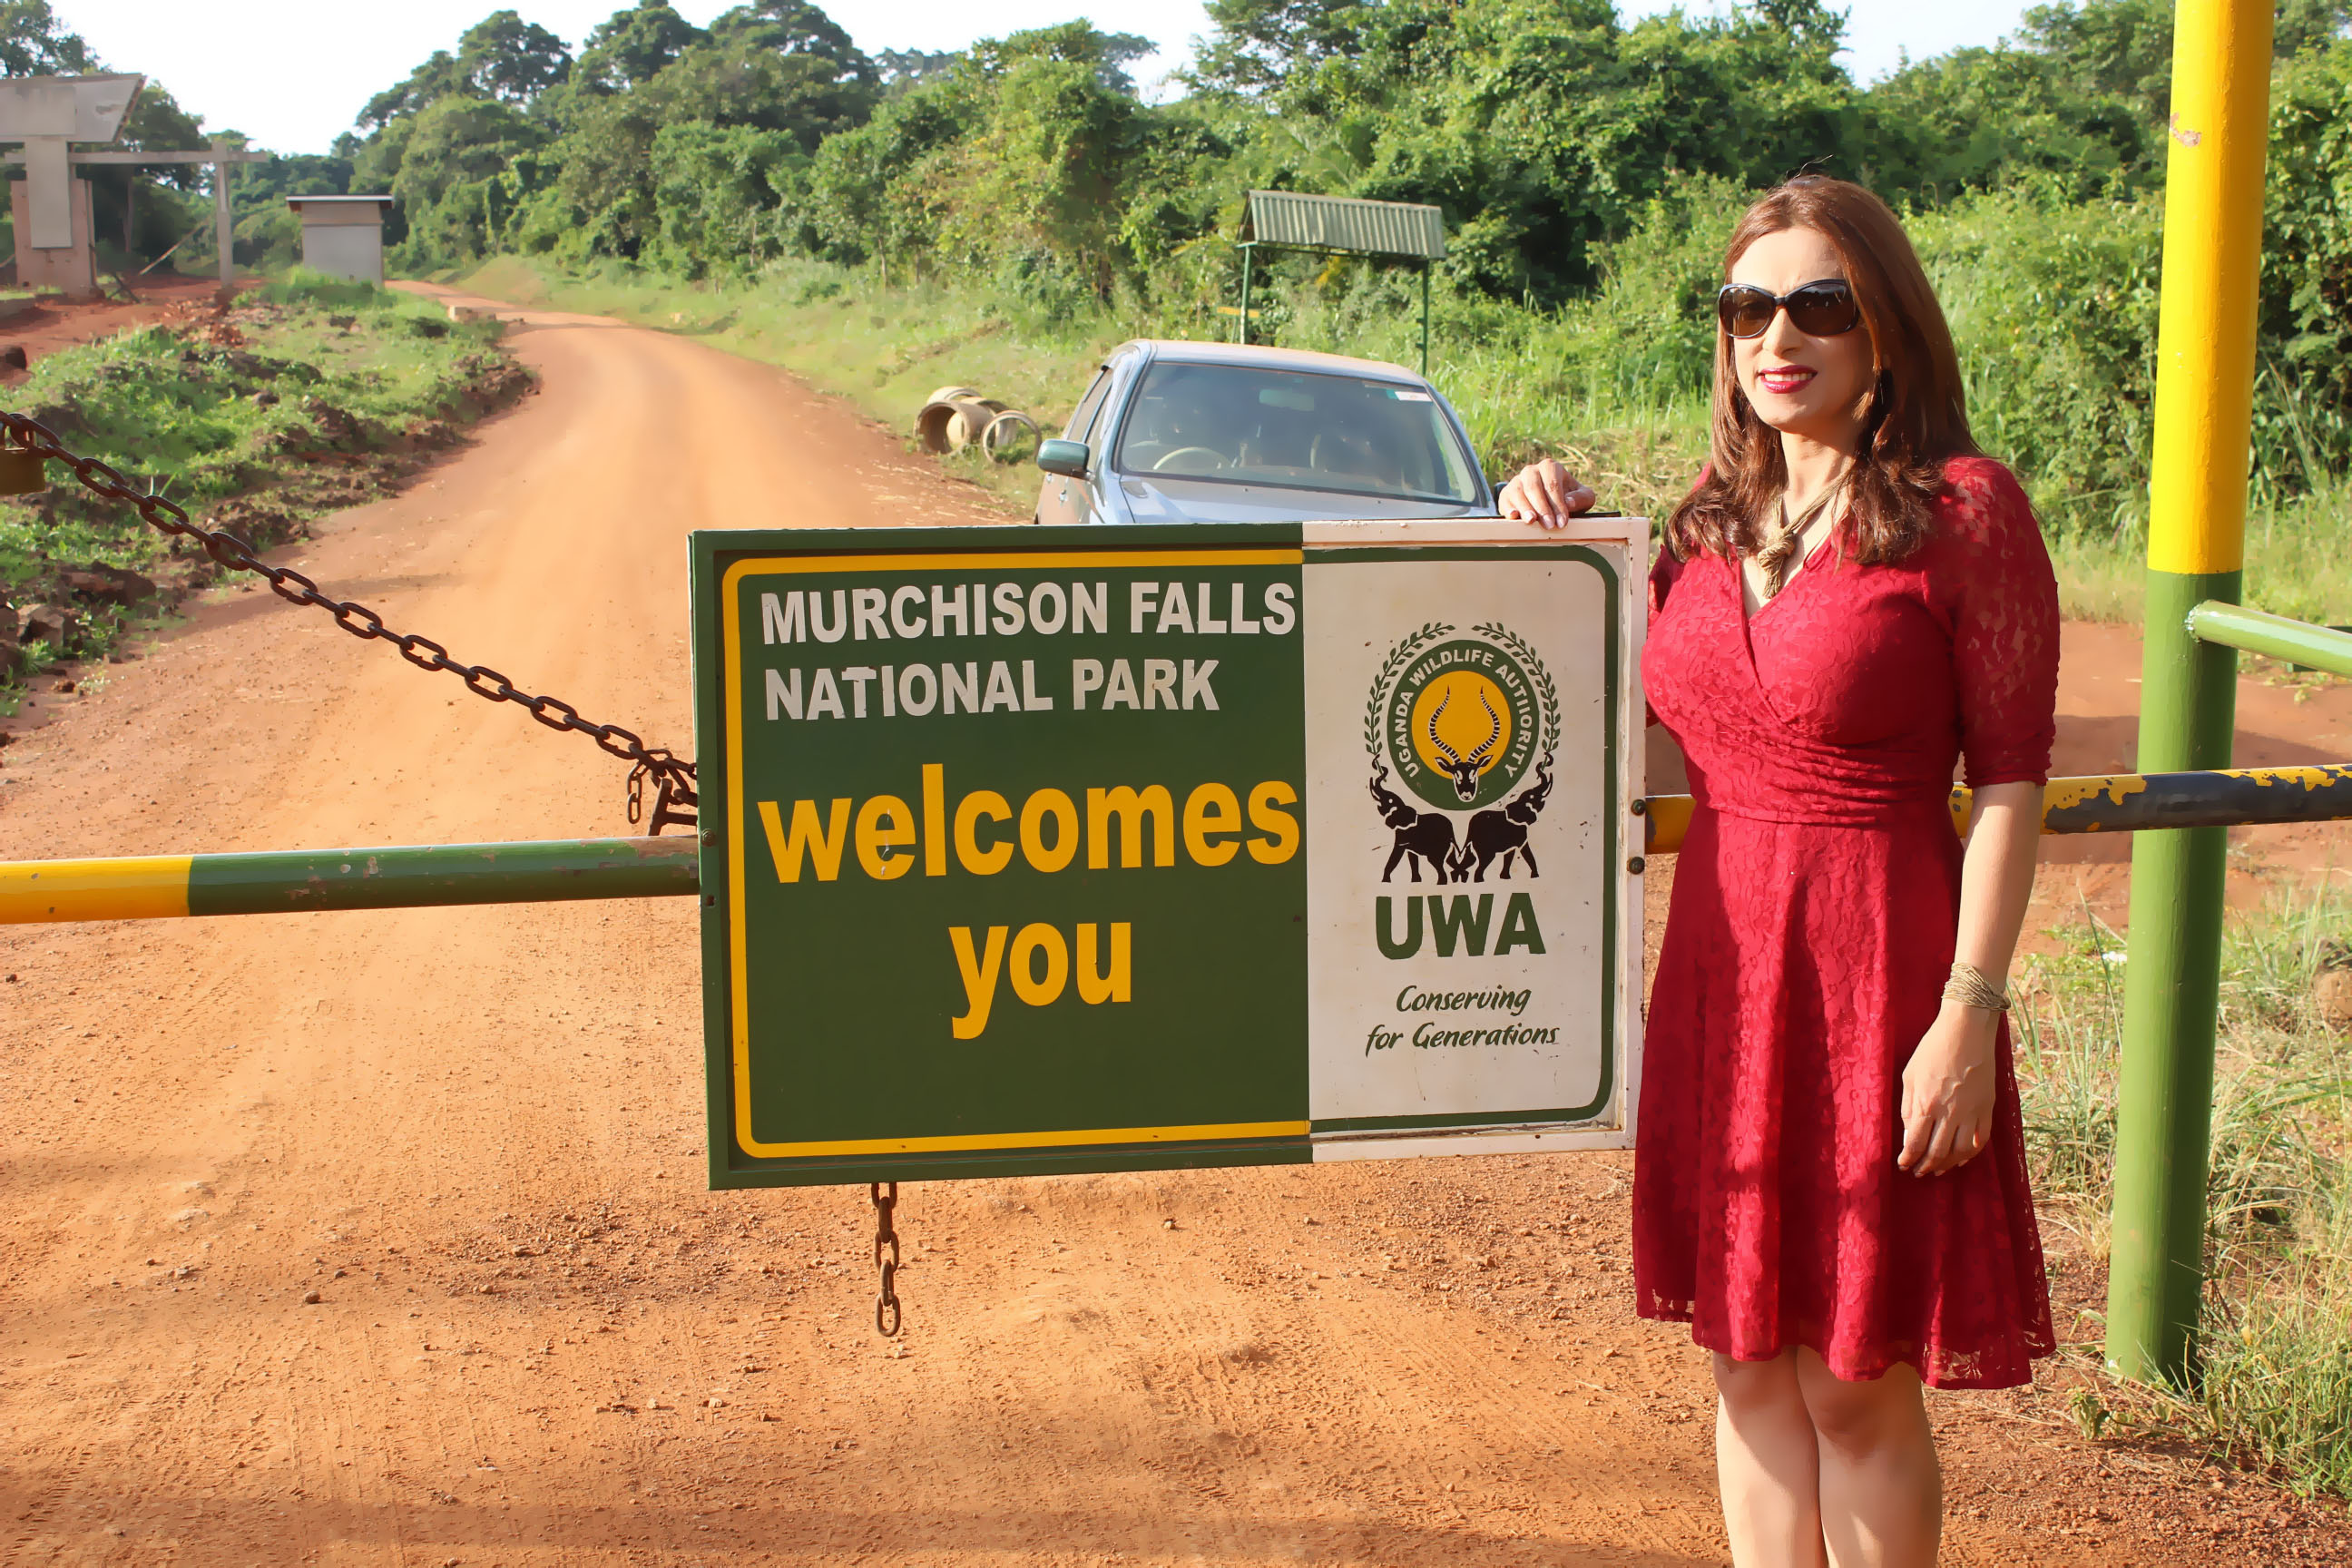 أون أفريكا فى محمية شلالات مارشيزون فى أوغندا